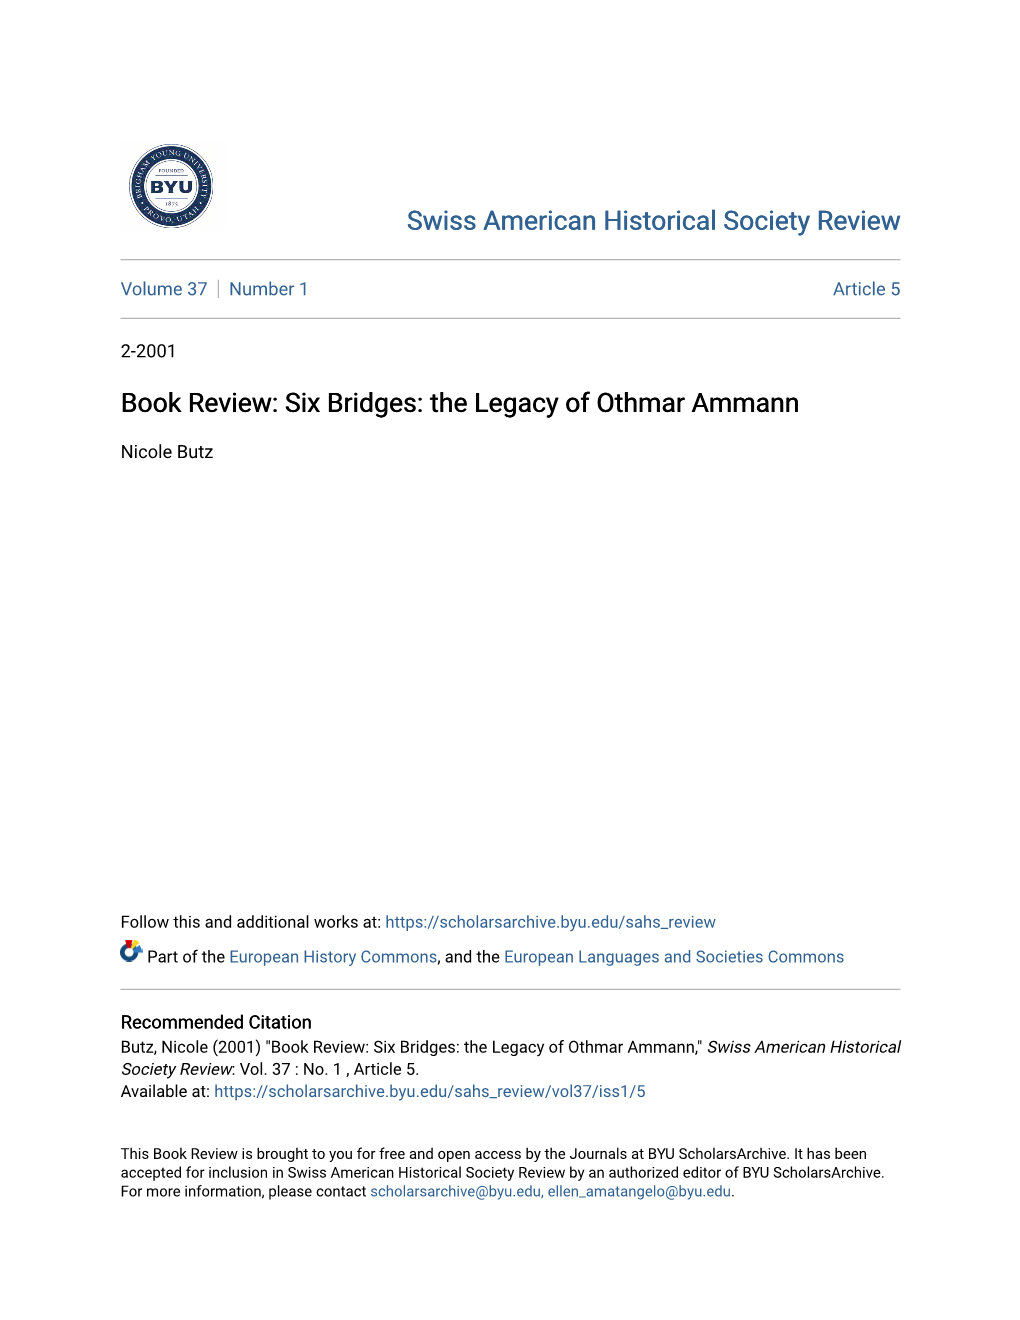 Book Review: Six Bridges: the Legacy of Othmar Ammann